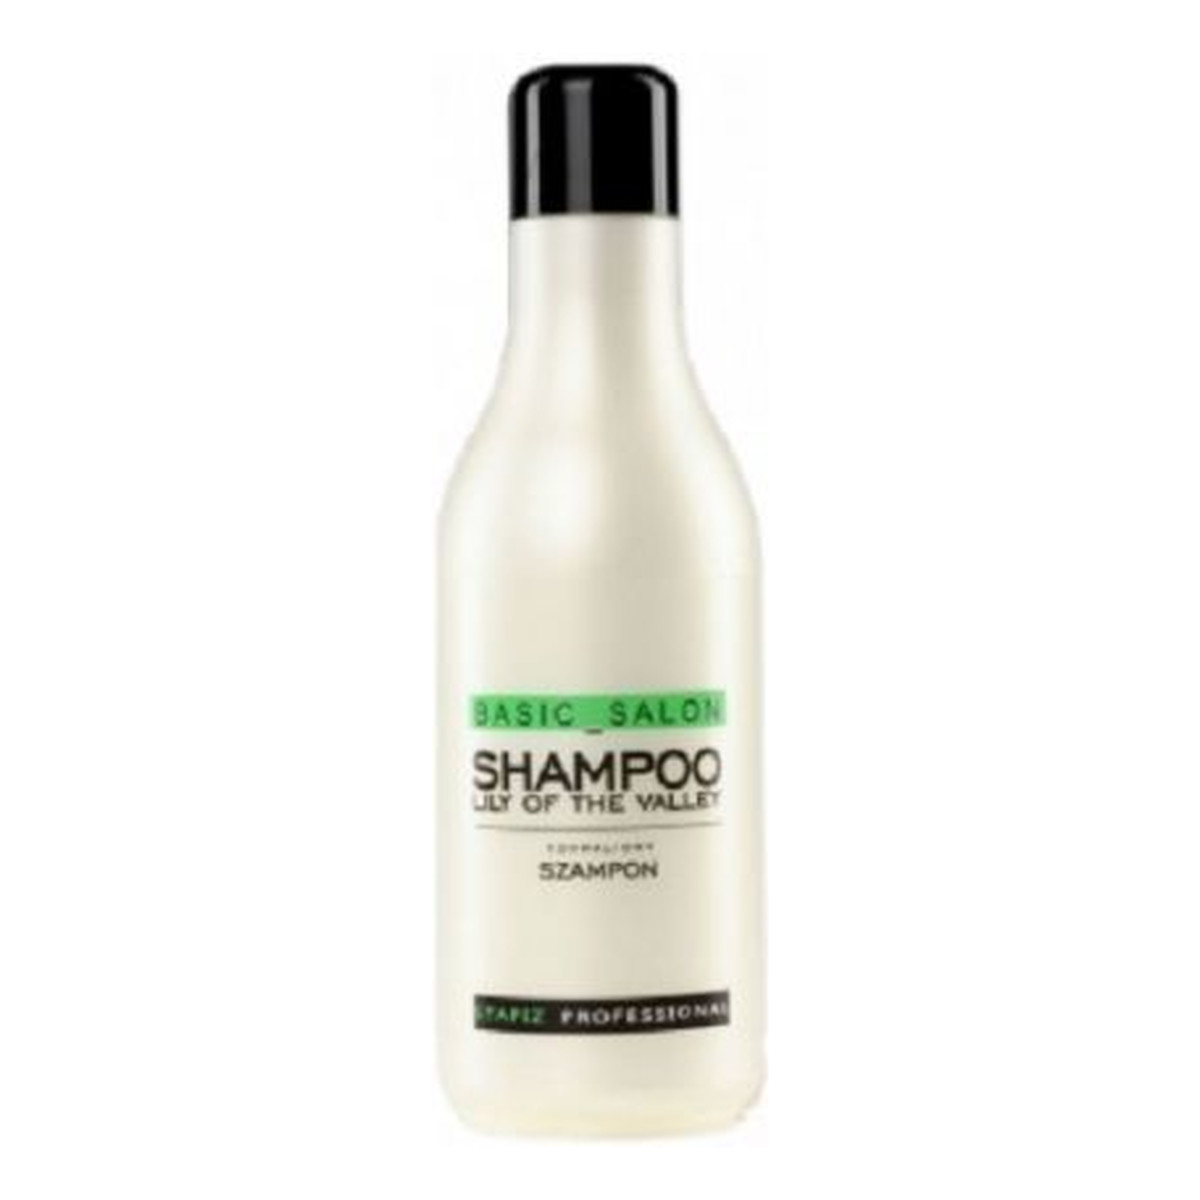 Stapiz Professional Lily Of The Valley Shampoo Szampon konwaliowy do włosów 1000ml